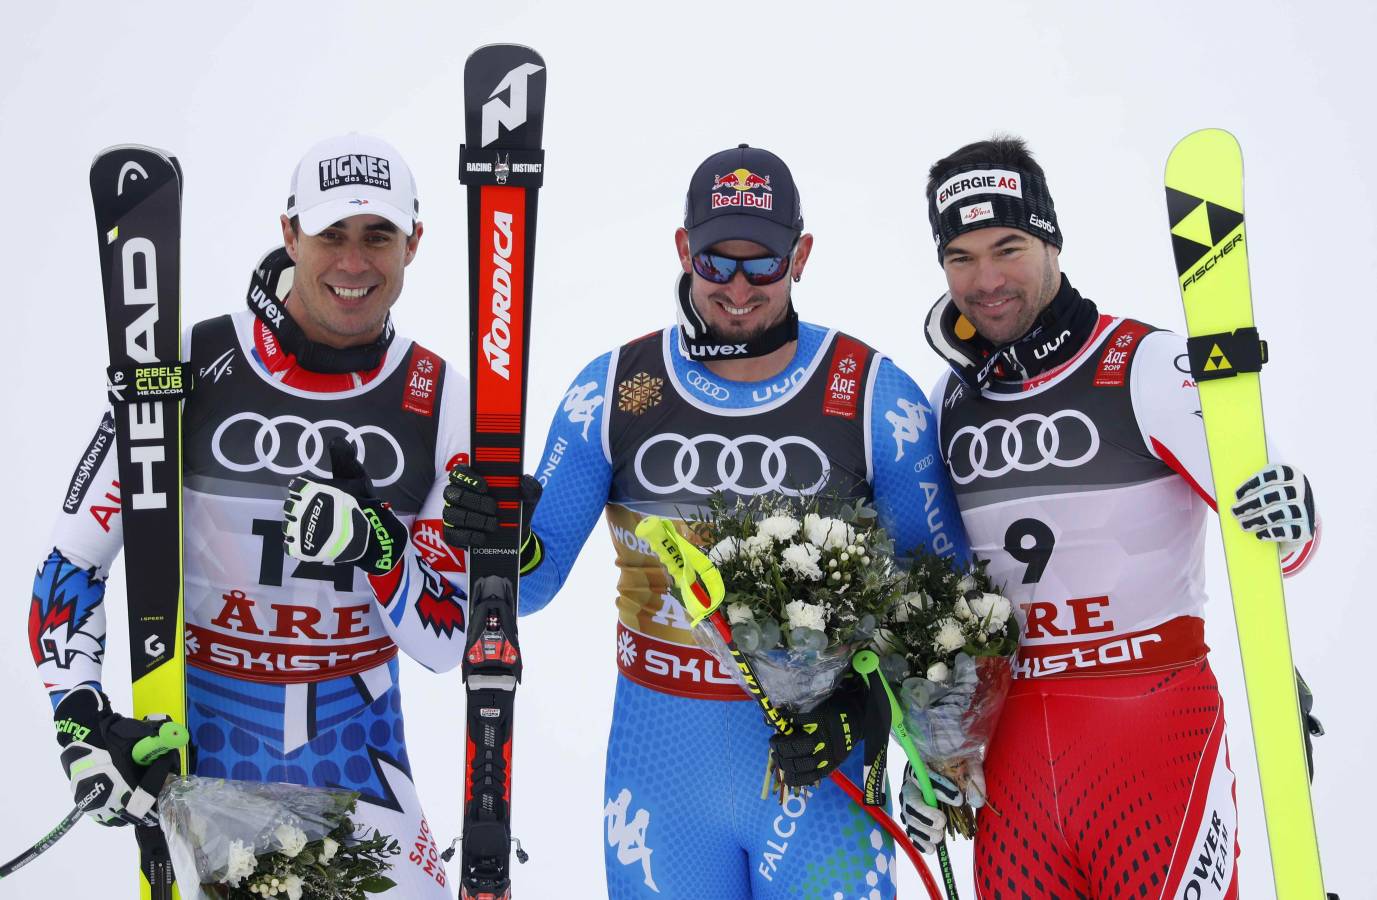 Are, en Suecia, está acogiendo el Campeonato del Mundo del Supergigante de esquí. 